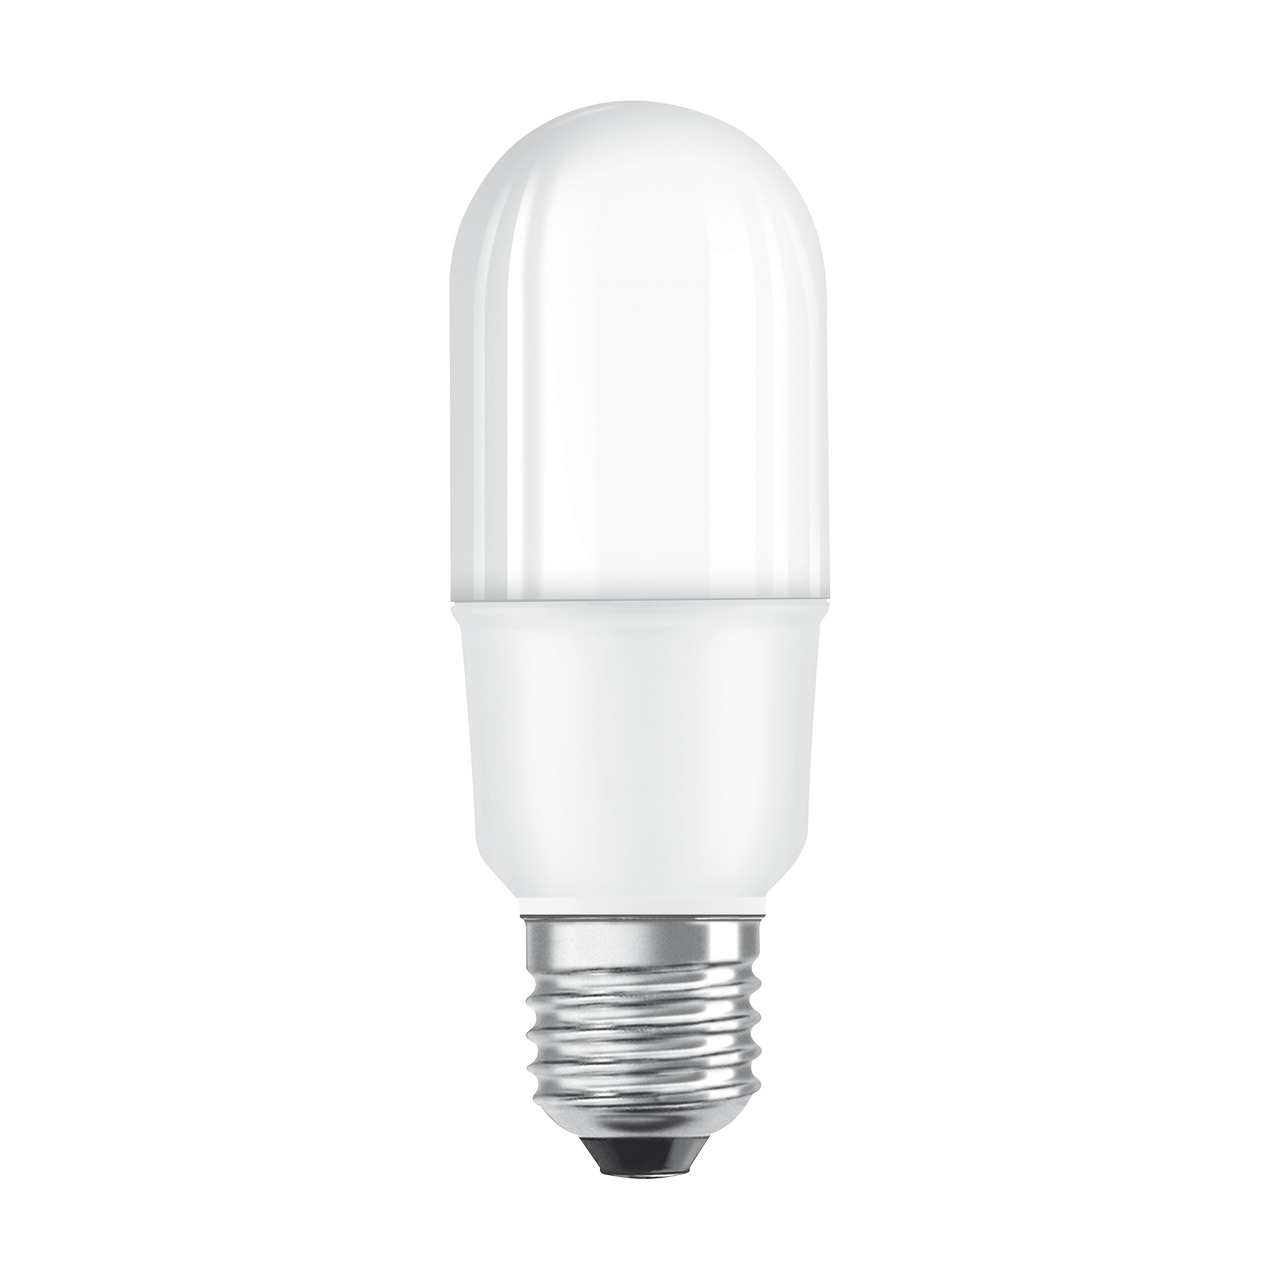 OSRAM LED STAR 9-W-LED-Lampe E27- warmweiss- schlanke Ausfhrung- Ersatz fr 75-W-Glhlampen